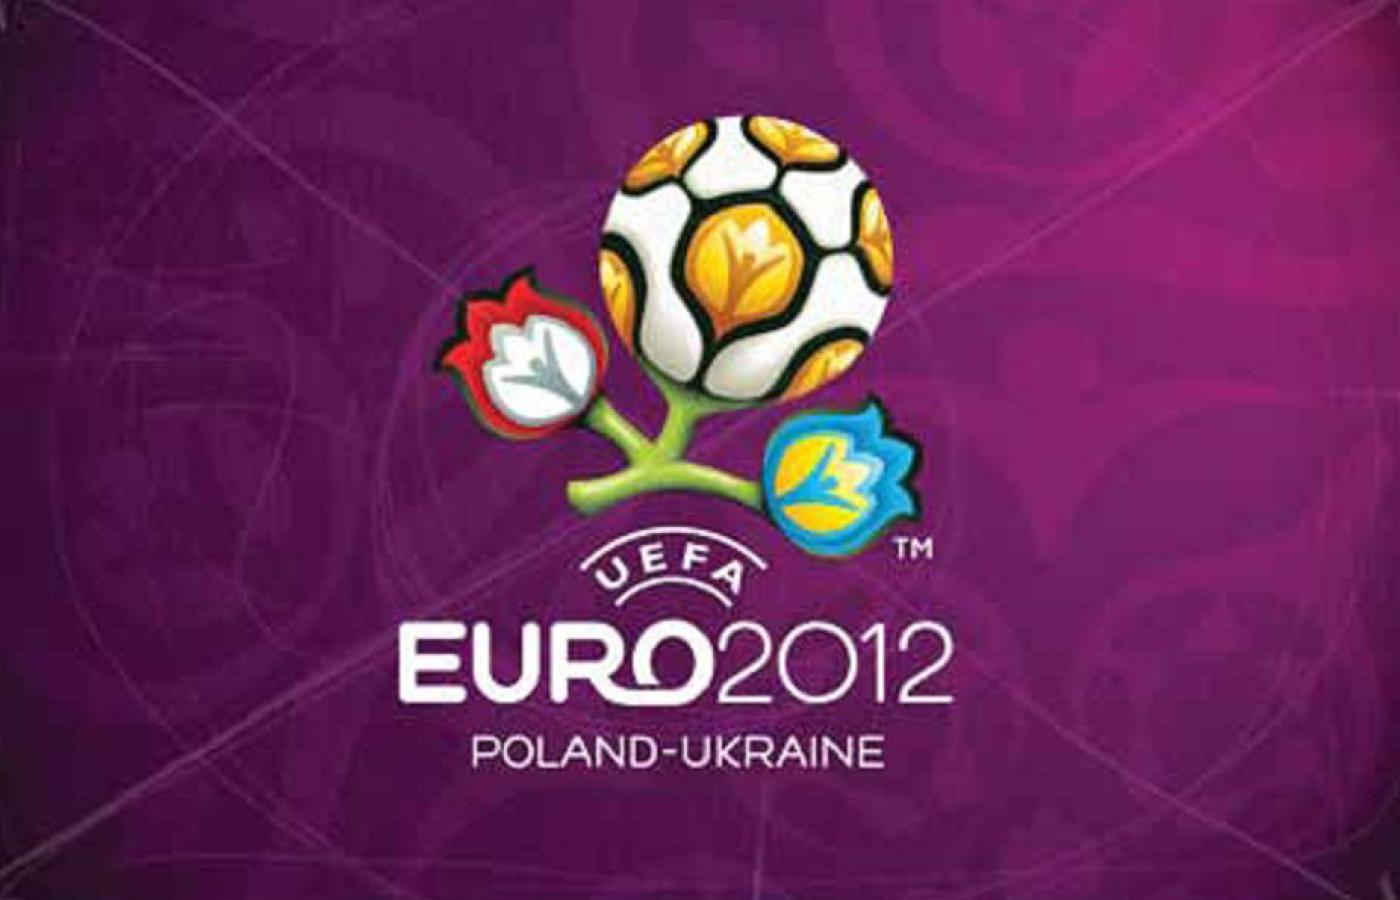 Oficjalny znak mistrzostw Euro 2012